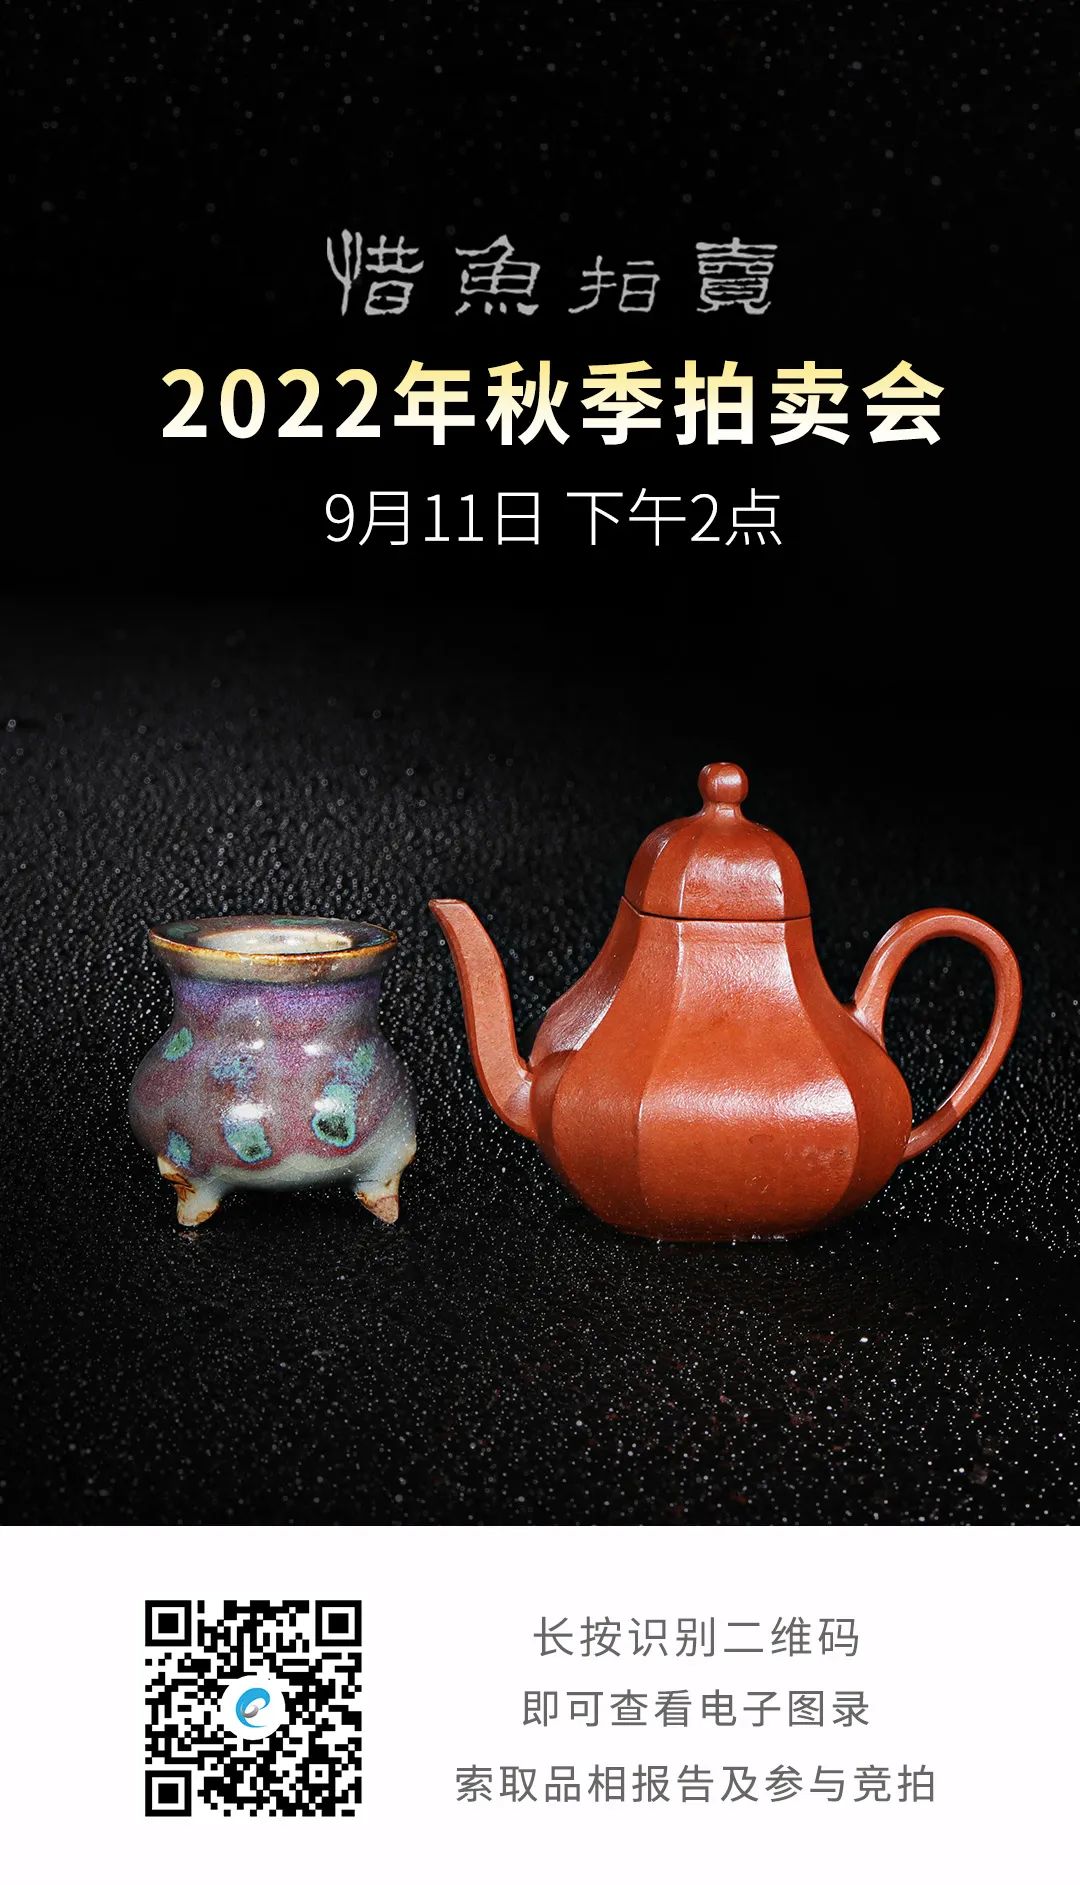 经典高古瓷与紫砂名品并美，台湾惜鱼2022秋拍倾情呈献- 拍卖行排行榜